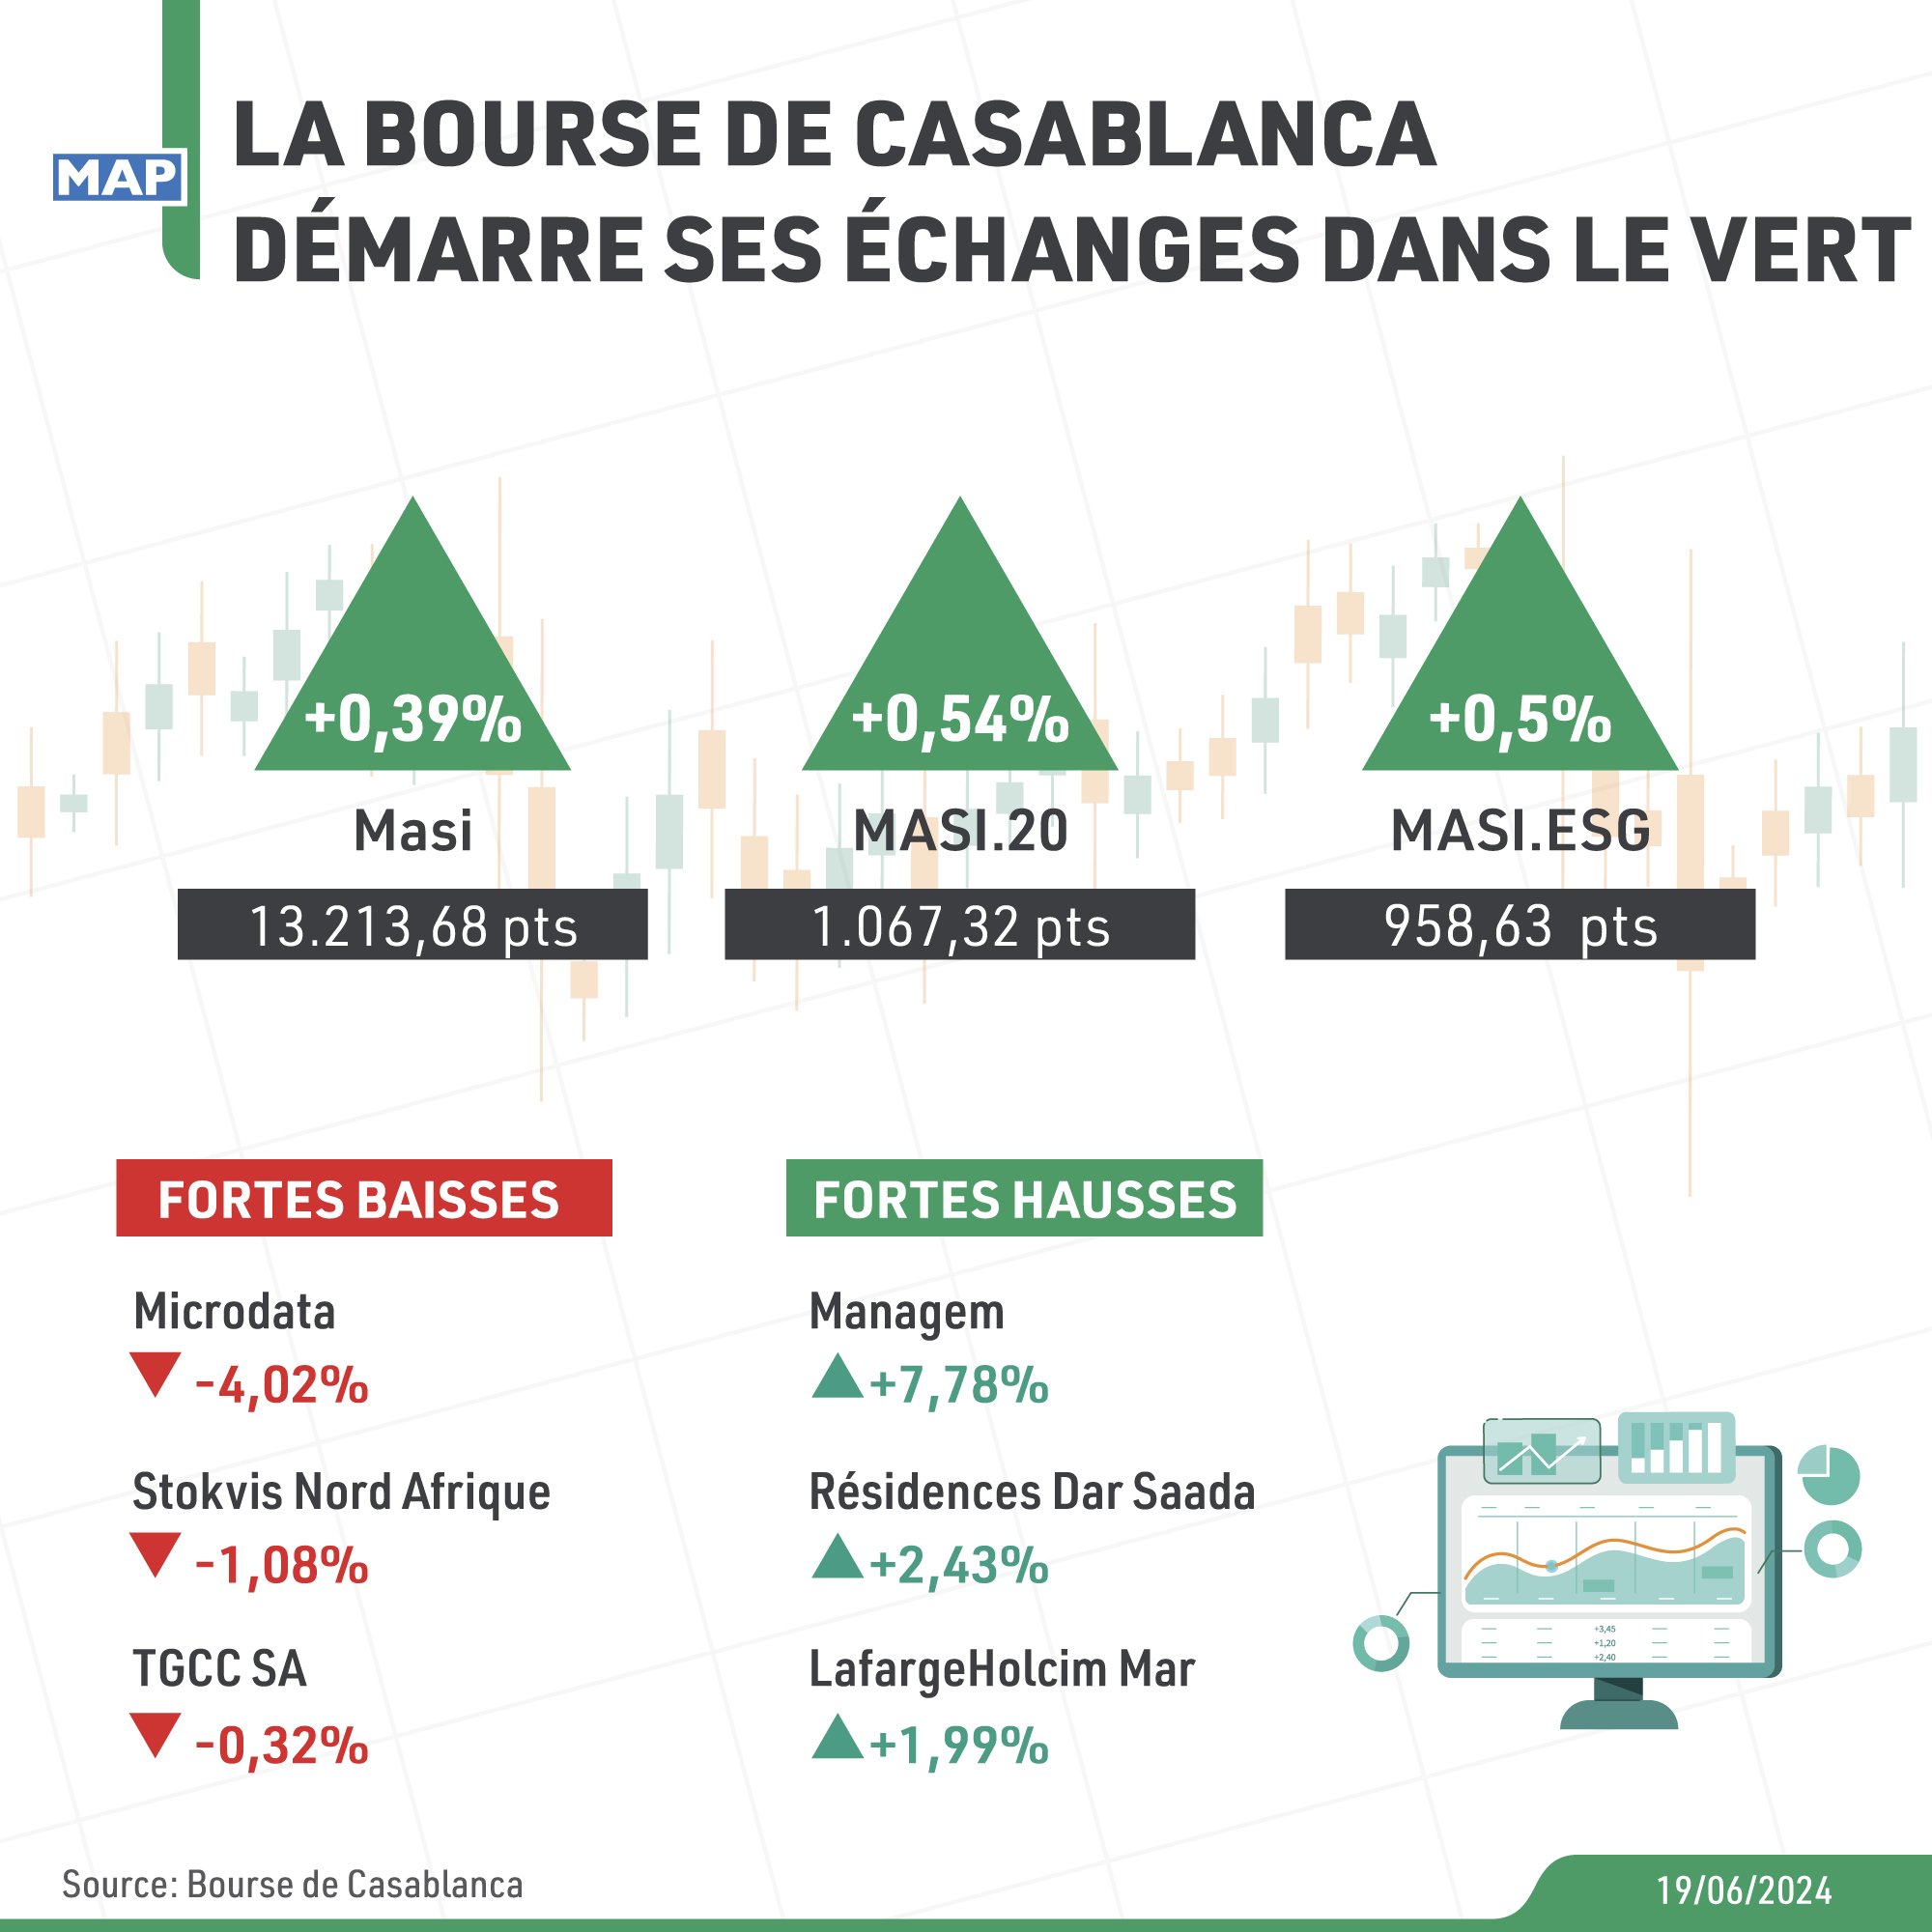 La Bourse de Casablanca démarre ses échanges dans le vert